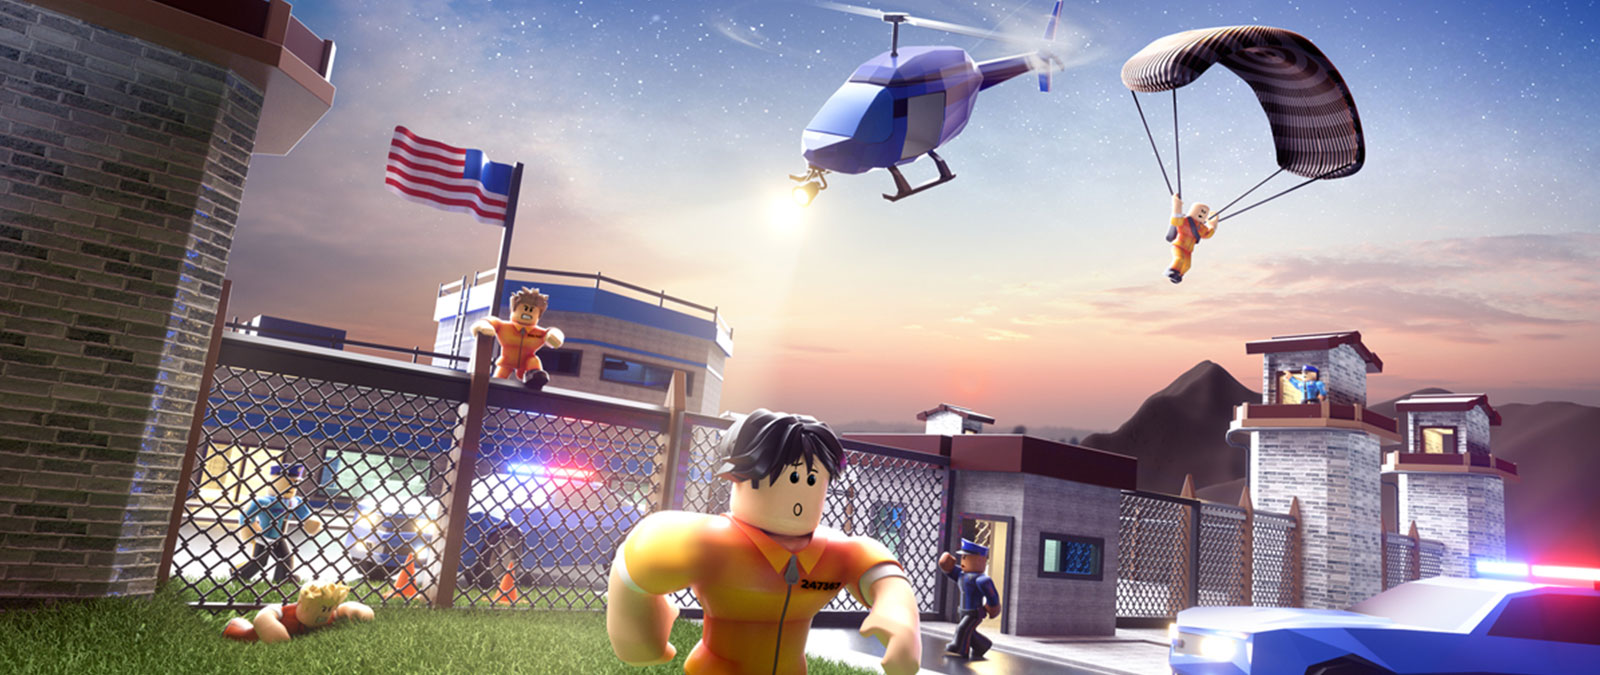 Roblox-Charaktere, die aus dem Gefängnis ausbrechen, während die Polizei ihnen im Jailbreak-Spiel nachjagt